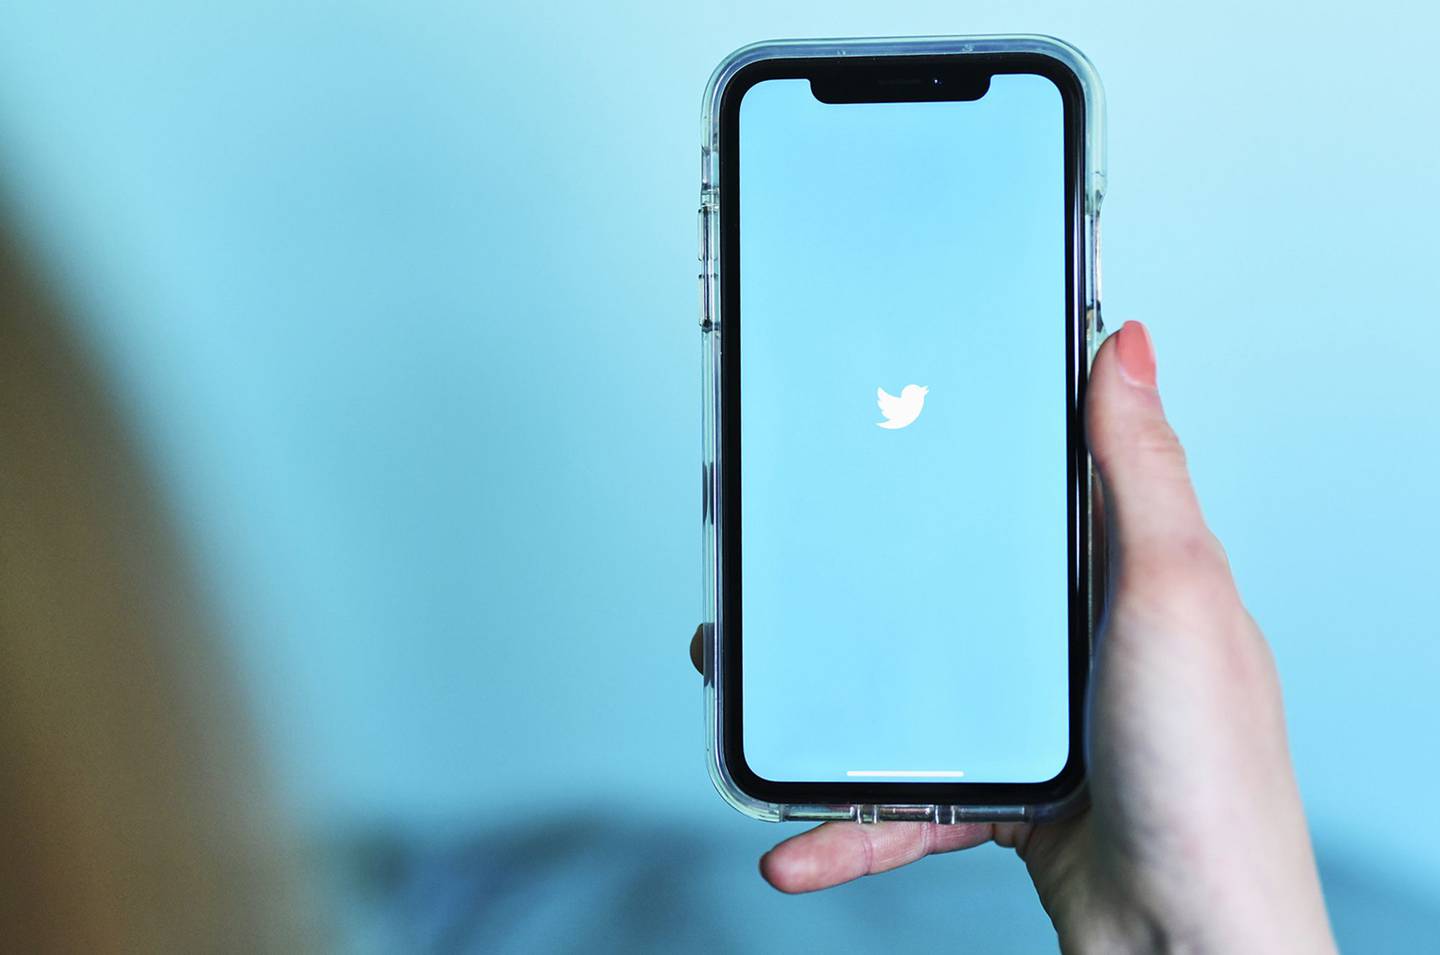 La publicidad política era una fuente de ingresos menor para Twitter antes de la prohibición: ascendió a menos de US$ 3 millones en ventas durante las elecciones de mitad de mandato de 2018 en Estados Unidos